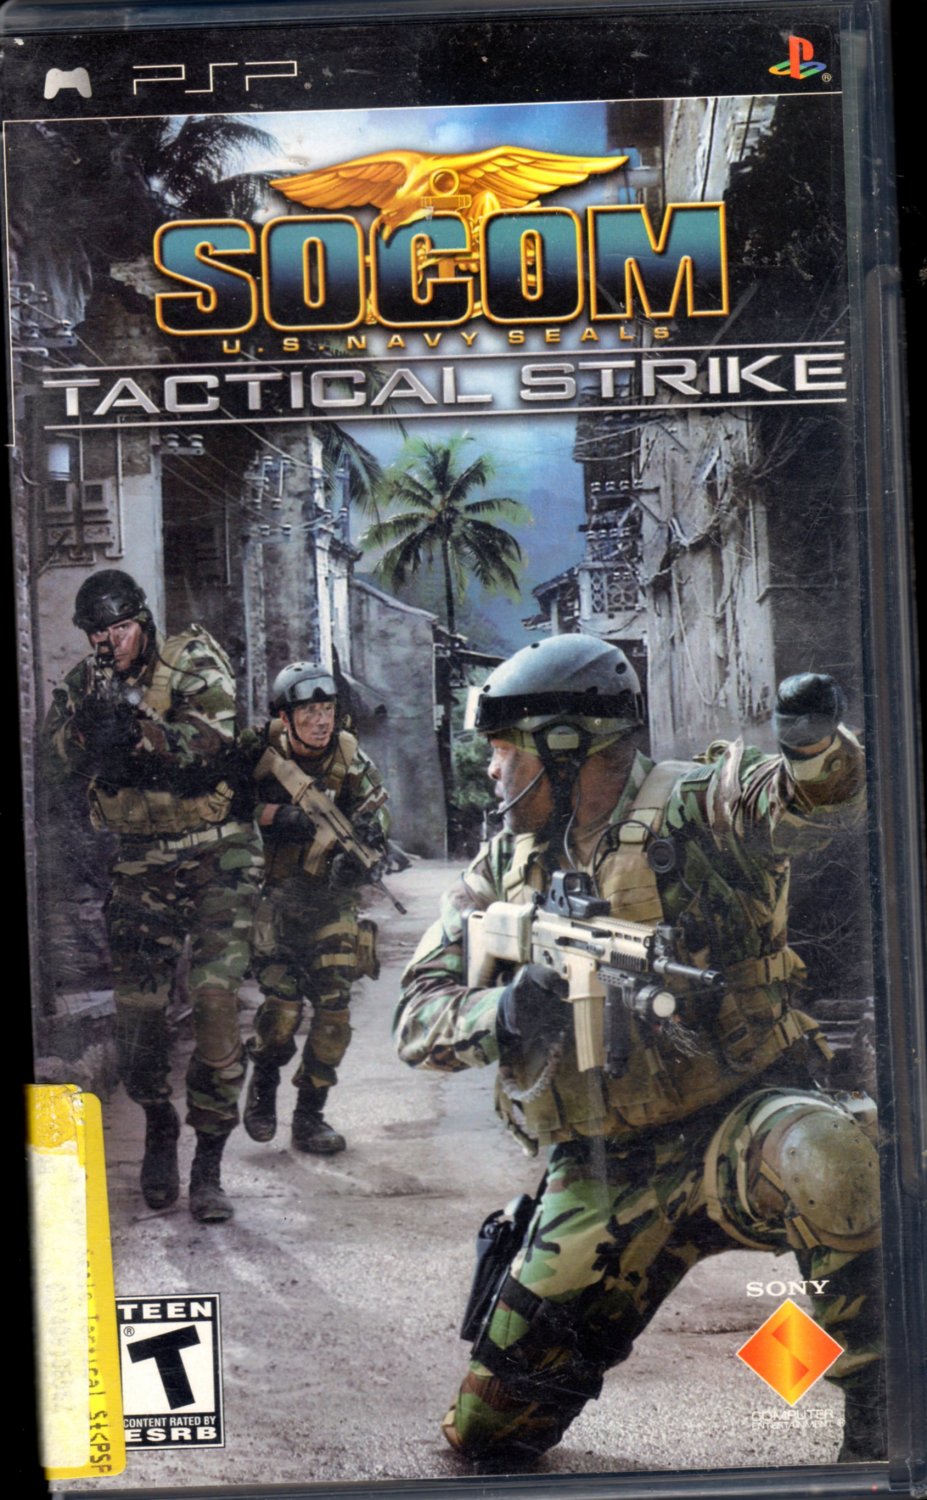 Socom Tactical Strike Sony PSP Game